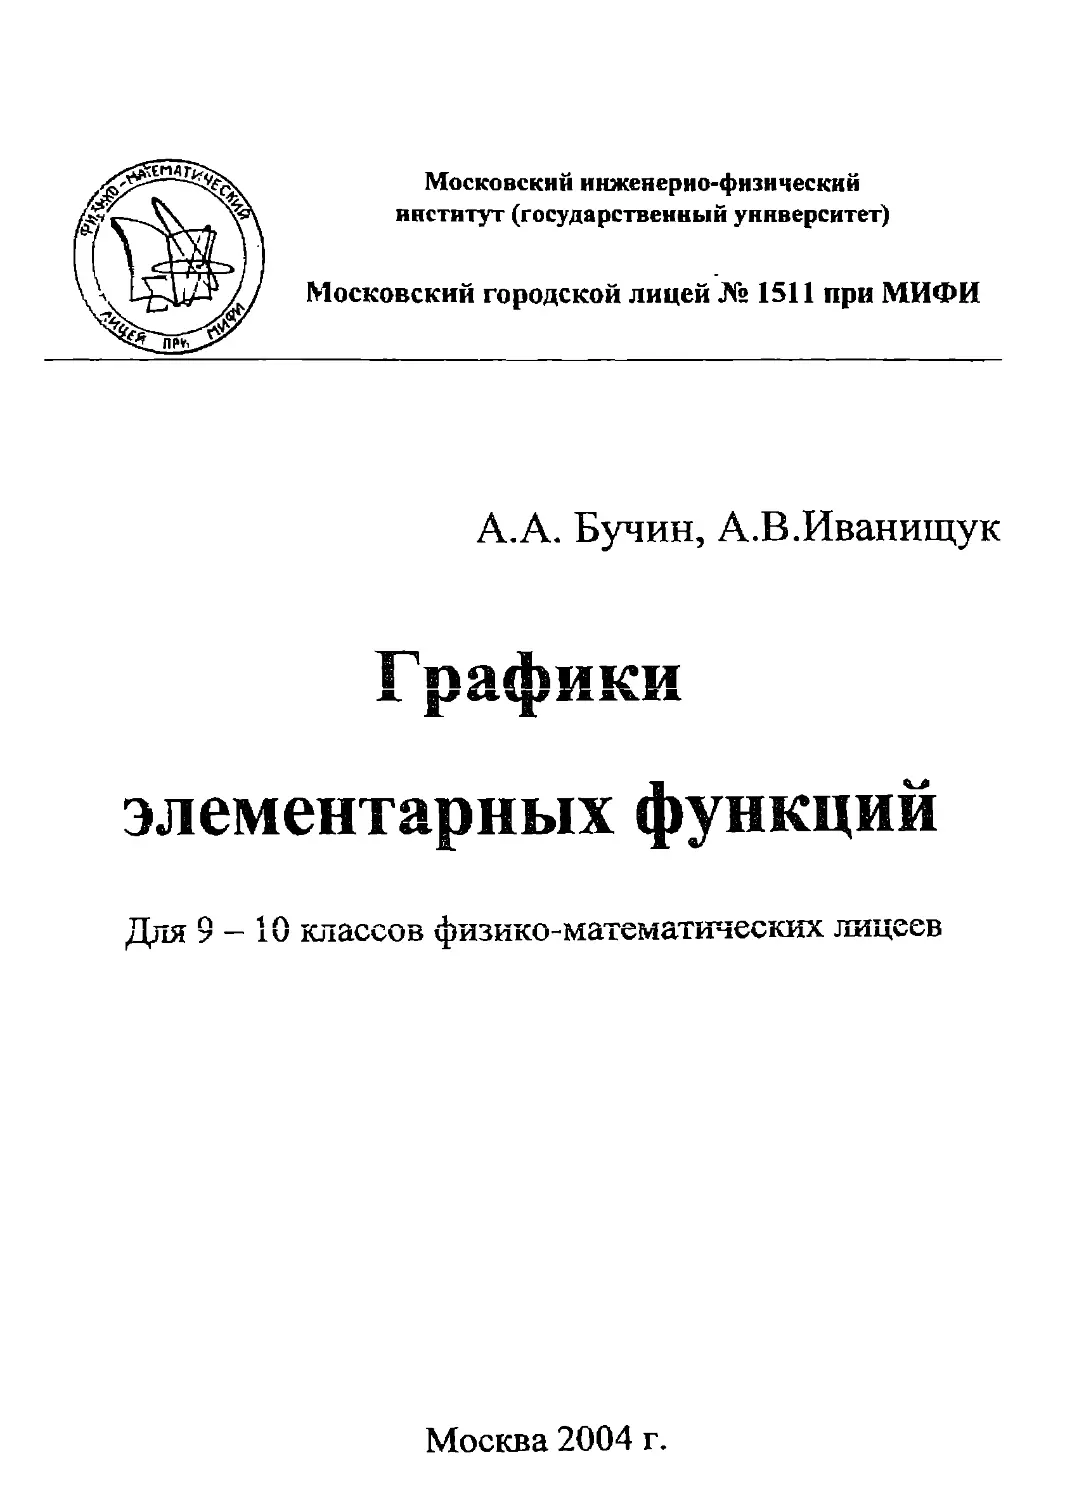 Бучин А.А.,Иванищук А.В. Графики элементарных функций. М.:2004